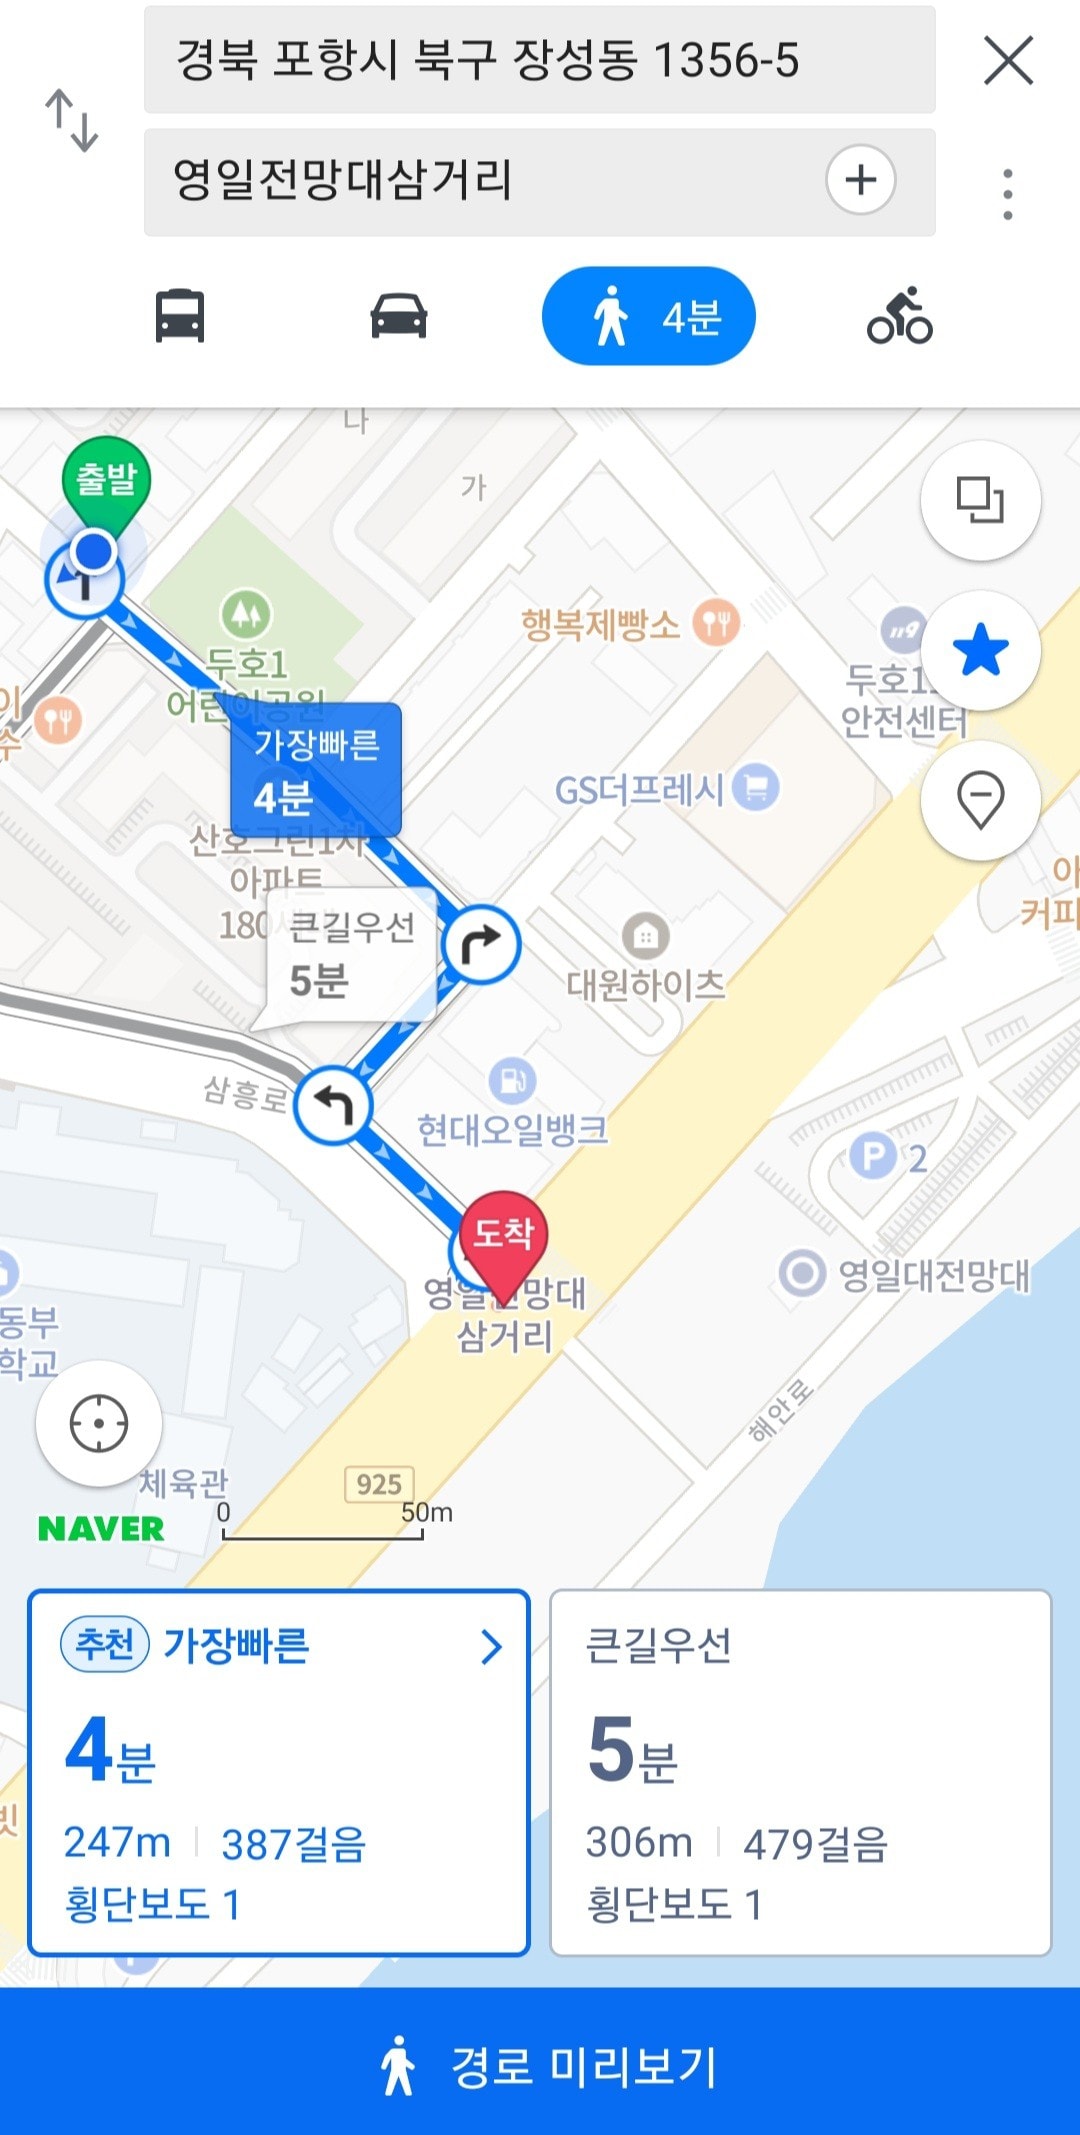 步行3分钟即可抵达Yeongil大学海滩集团提供高速互联网Netflix